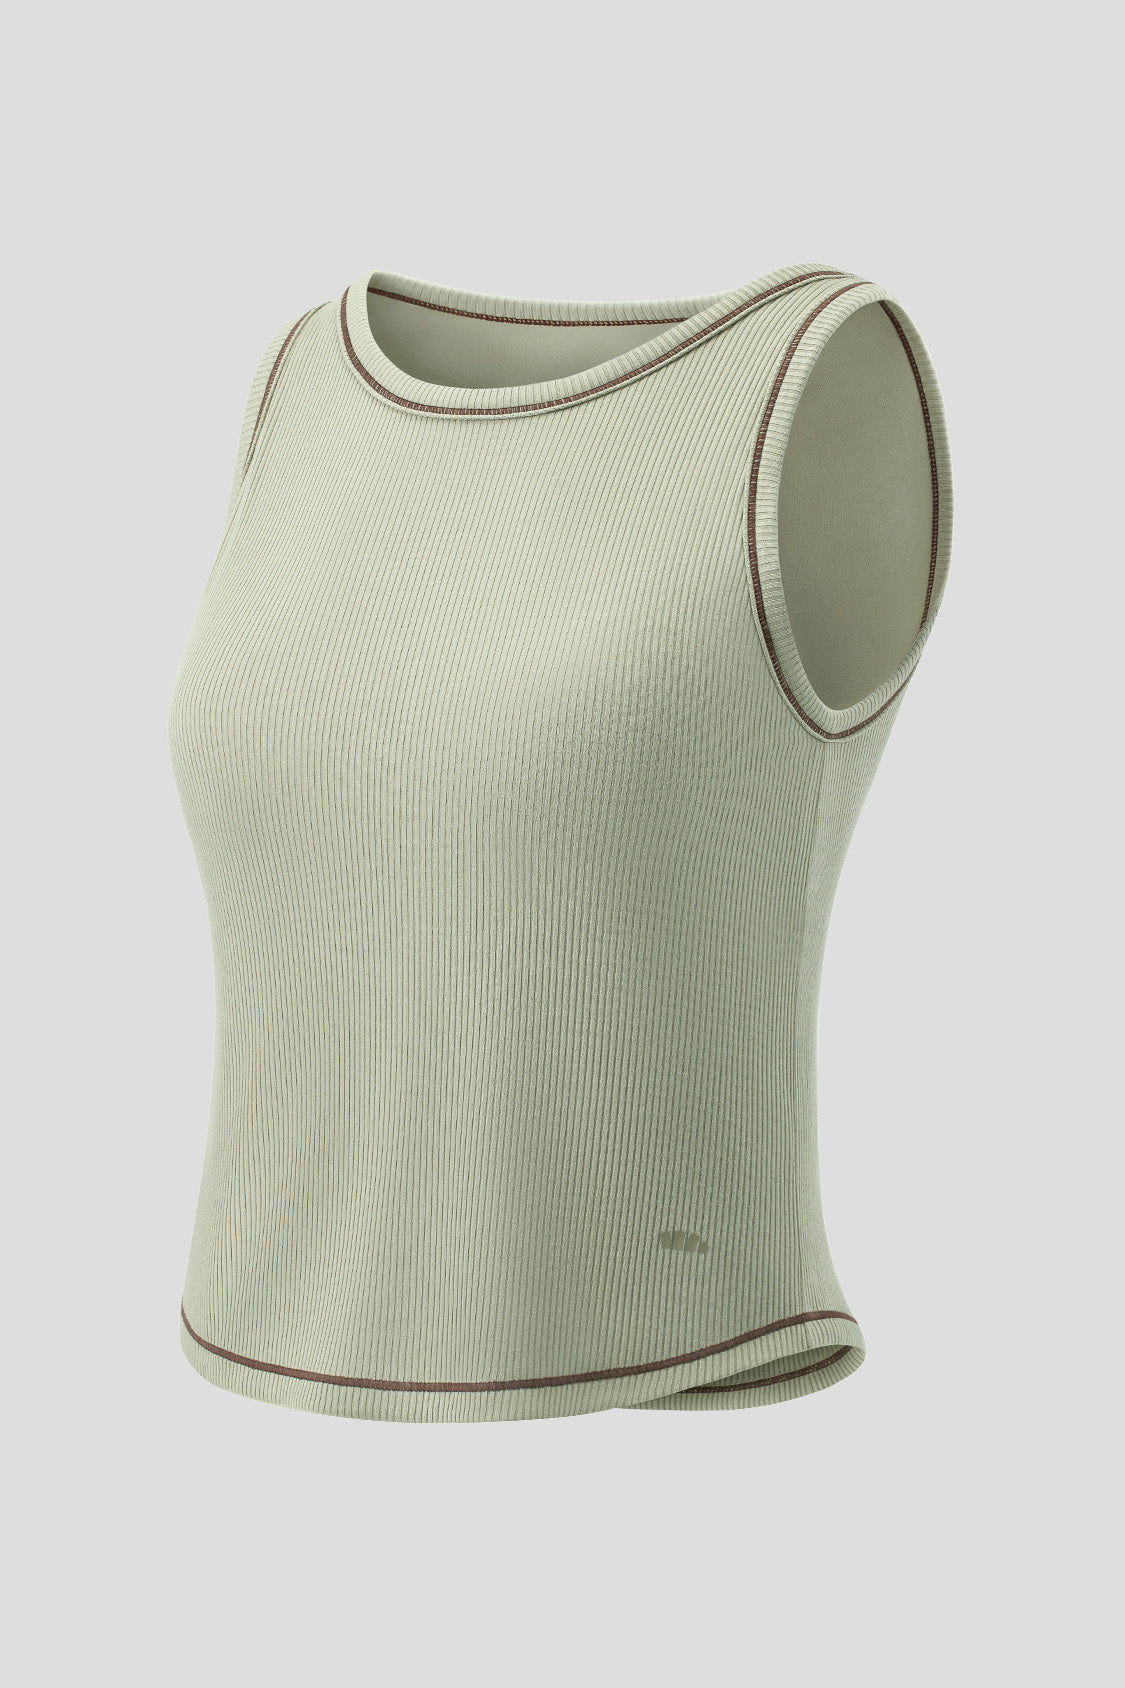 vegetabk Sleeveless Thermal vest for Women with Built in Bra V